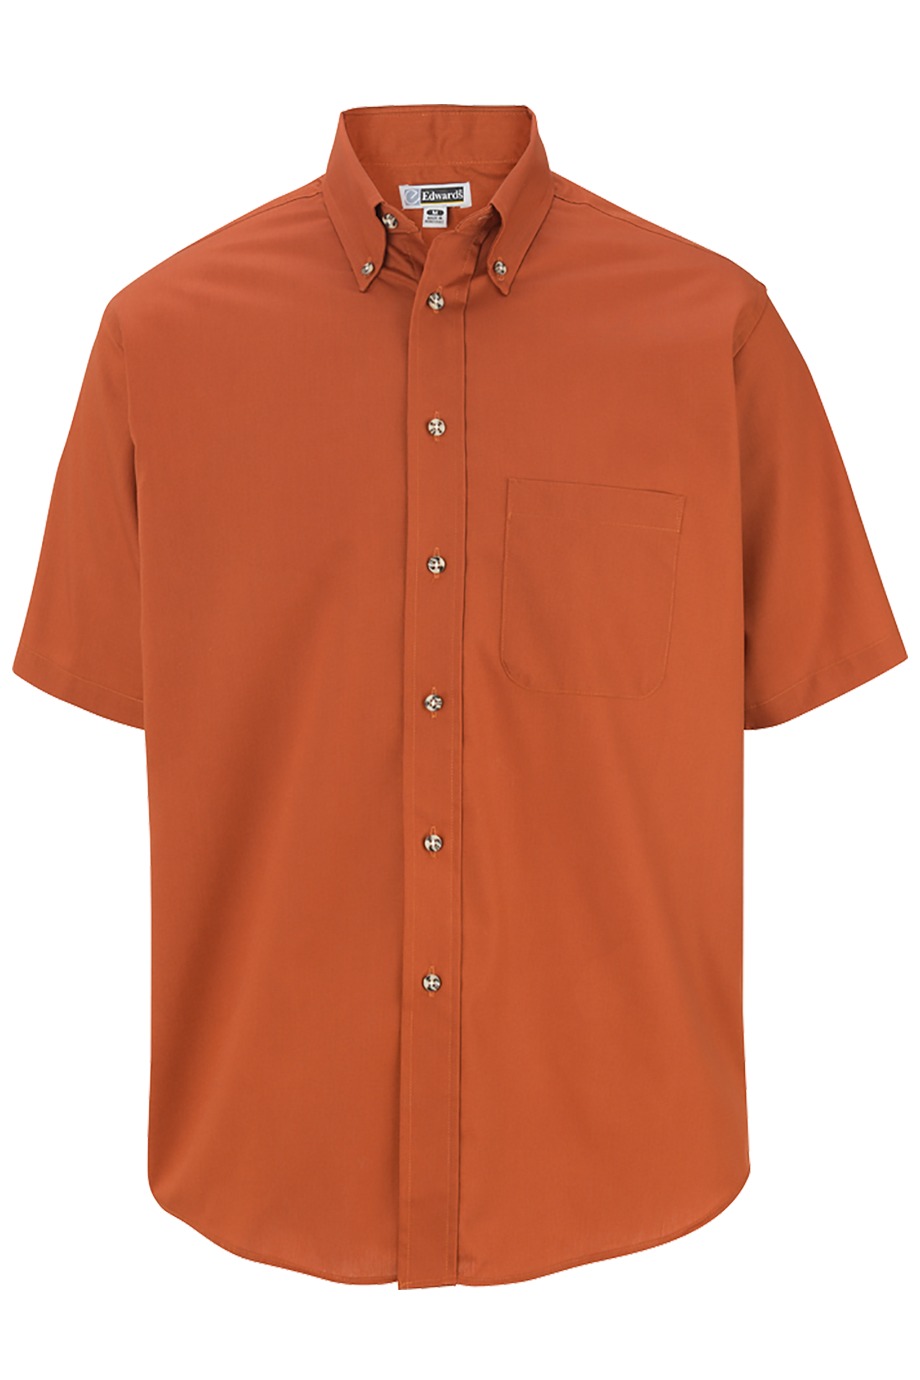 Edwards Garment 1230 - Men's Easy Care Short Sleeve Poplin Shirt $20.00 ...